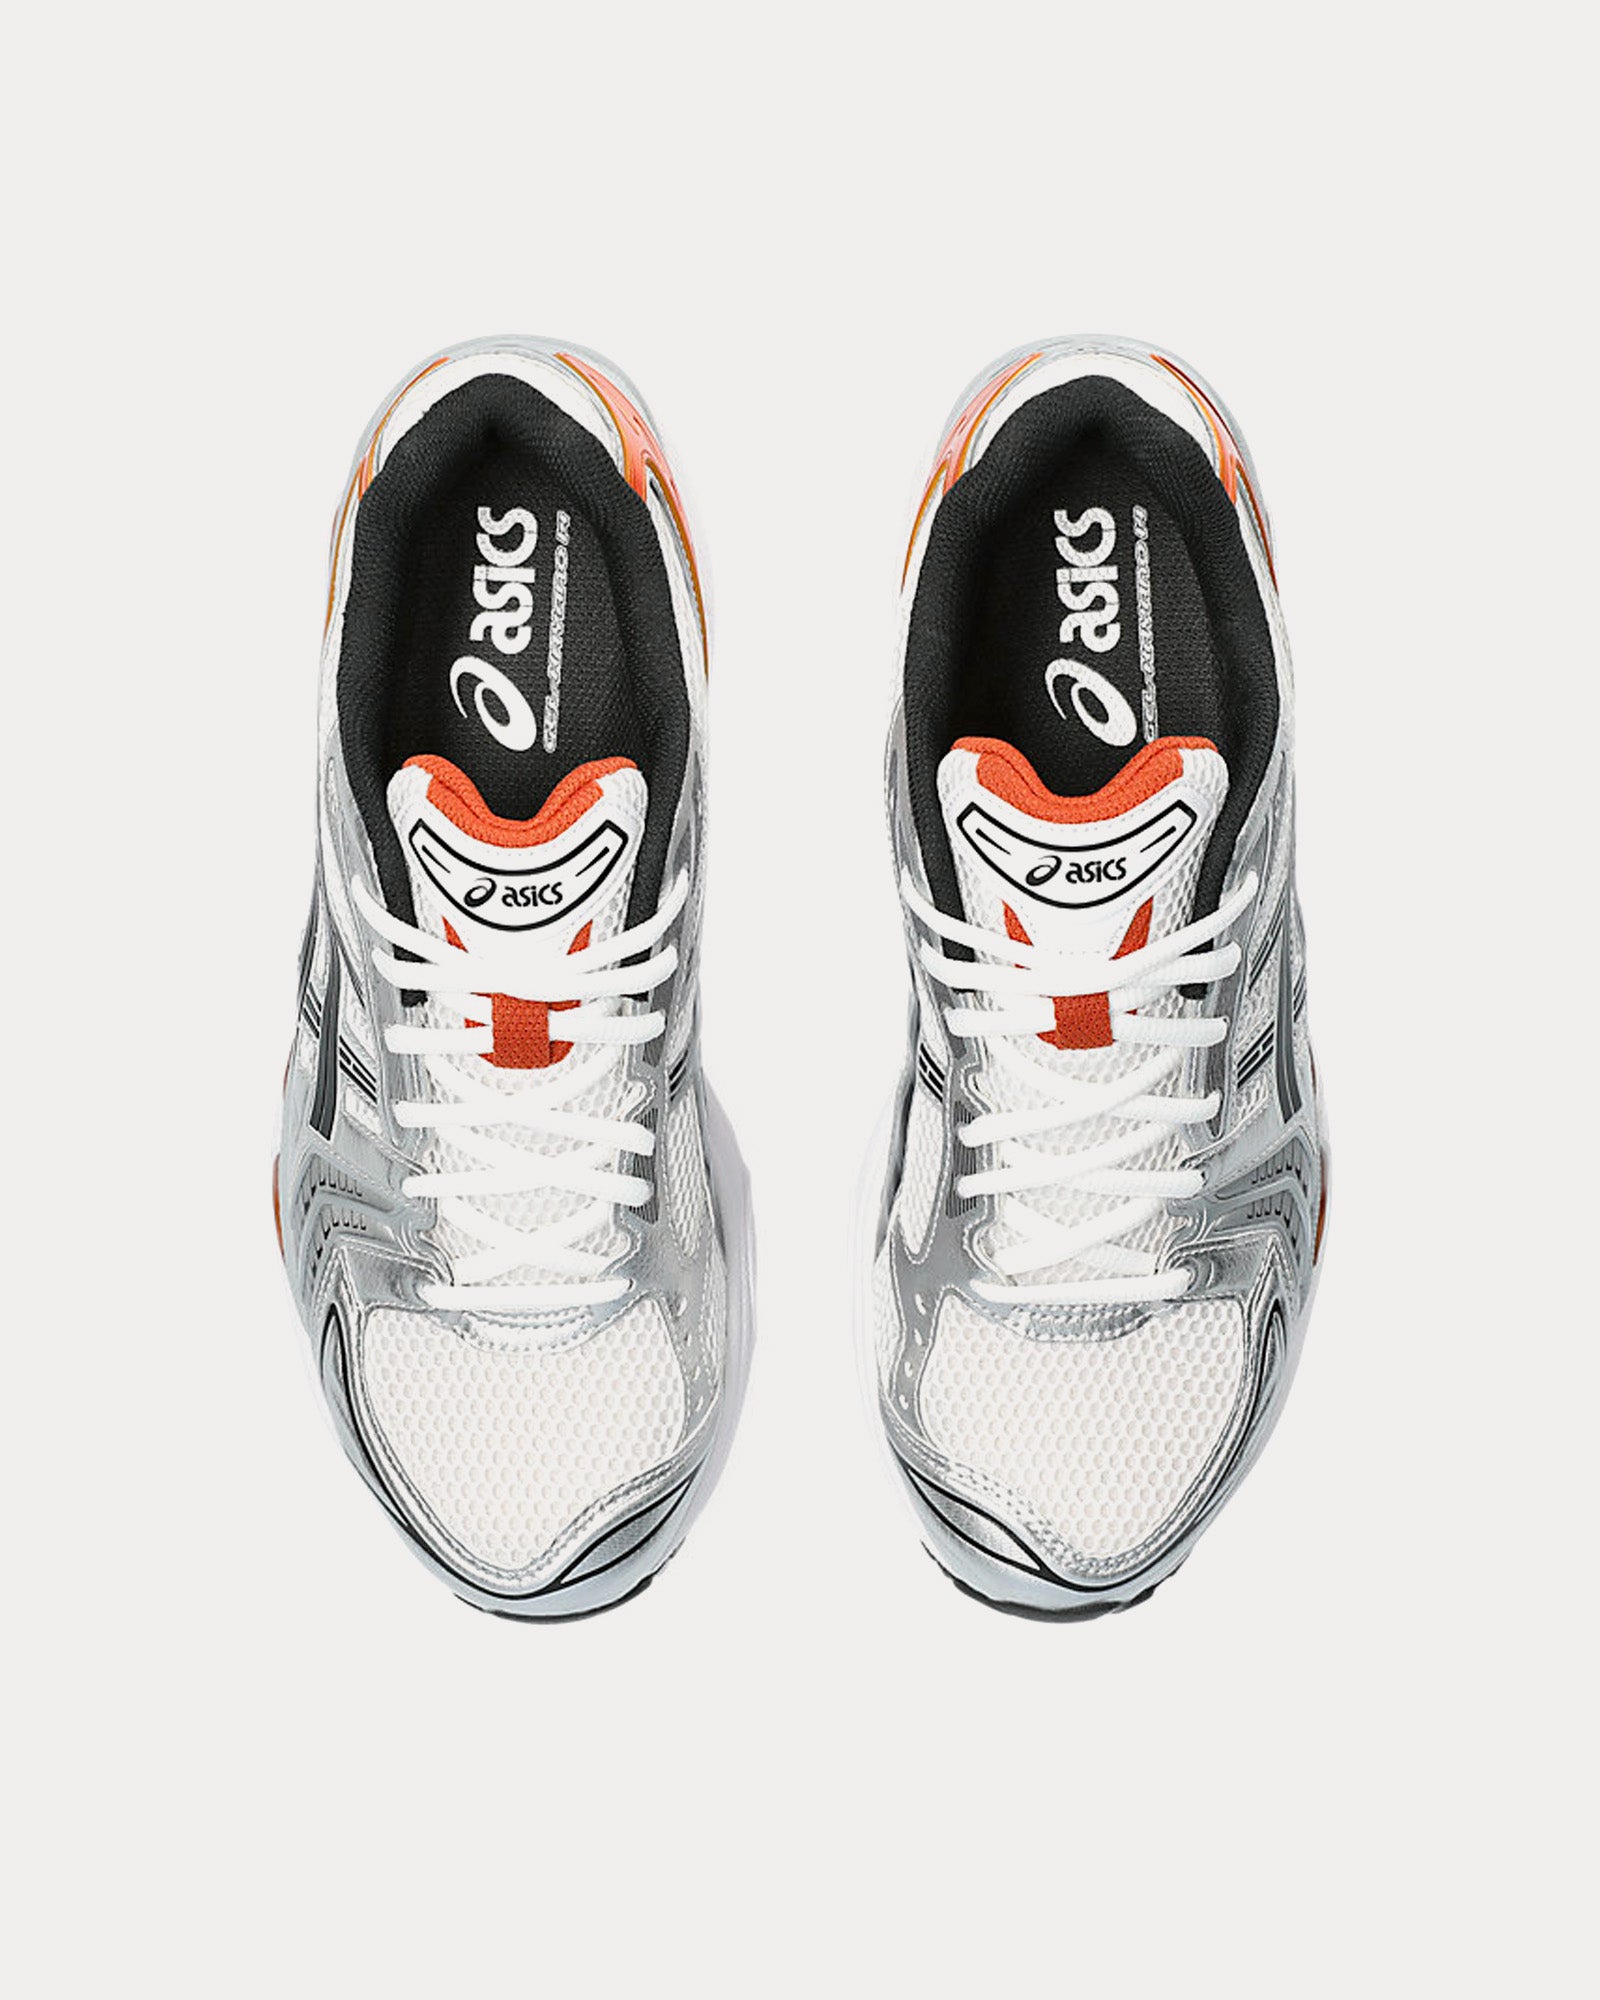 Asics - Gel-Kayano 14 White / Piquant Orange Low Top Sneakers